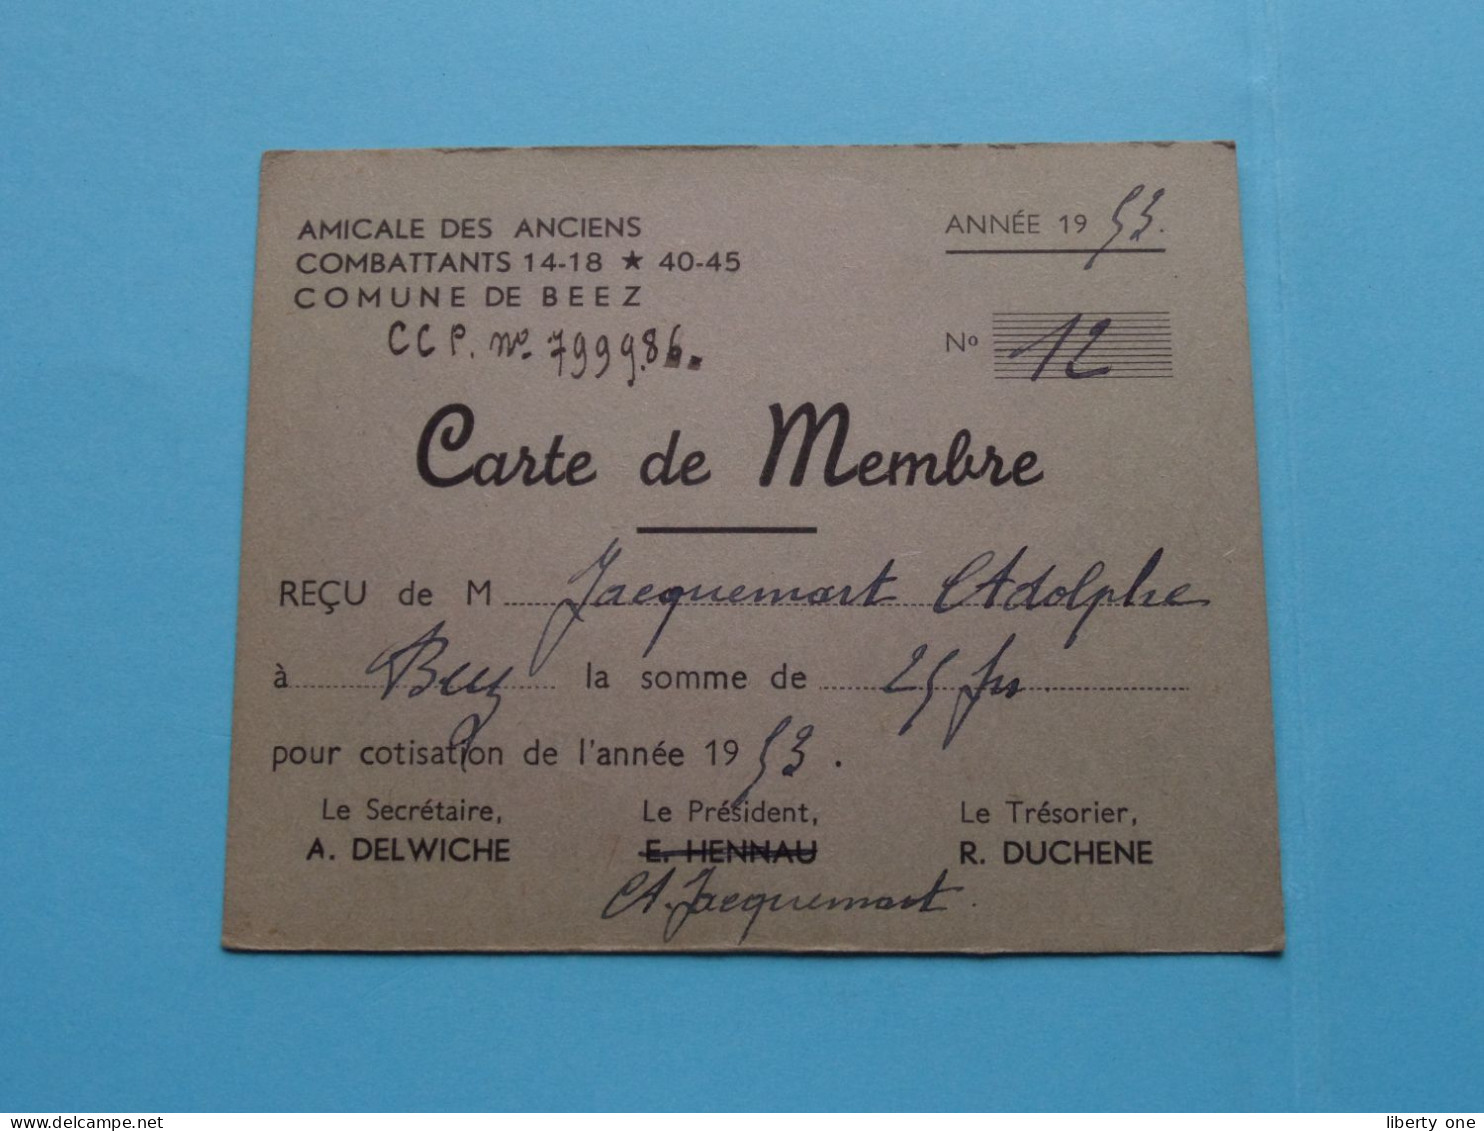 Am. Des Anciens COMBATTANTS 14-18 * 45-45 Com. De BEEZ ( Zie / Voir Scans ) 1953 ( Carte De Membre ) ! - Membership Cards